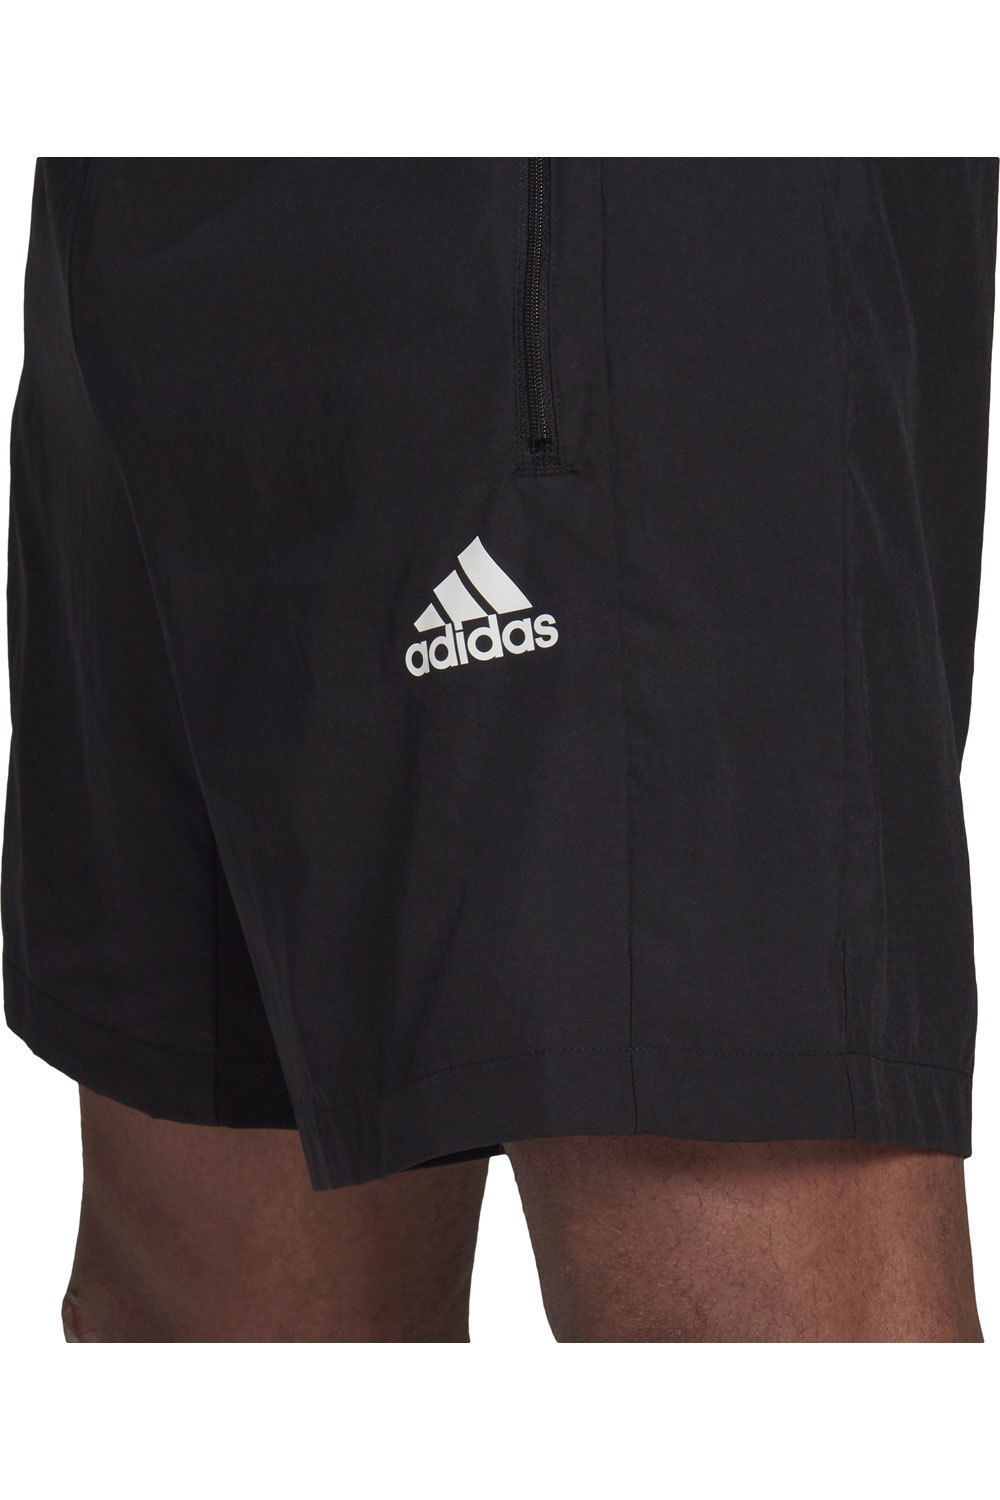 adidas pantalón corto fitness hombre AEROREADY Designed 2 Move Woven Sport vista detalle